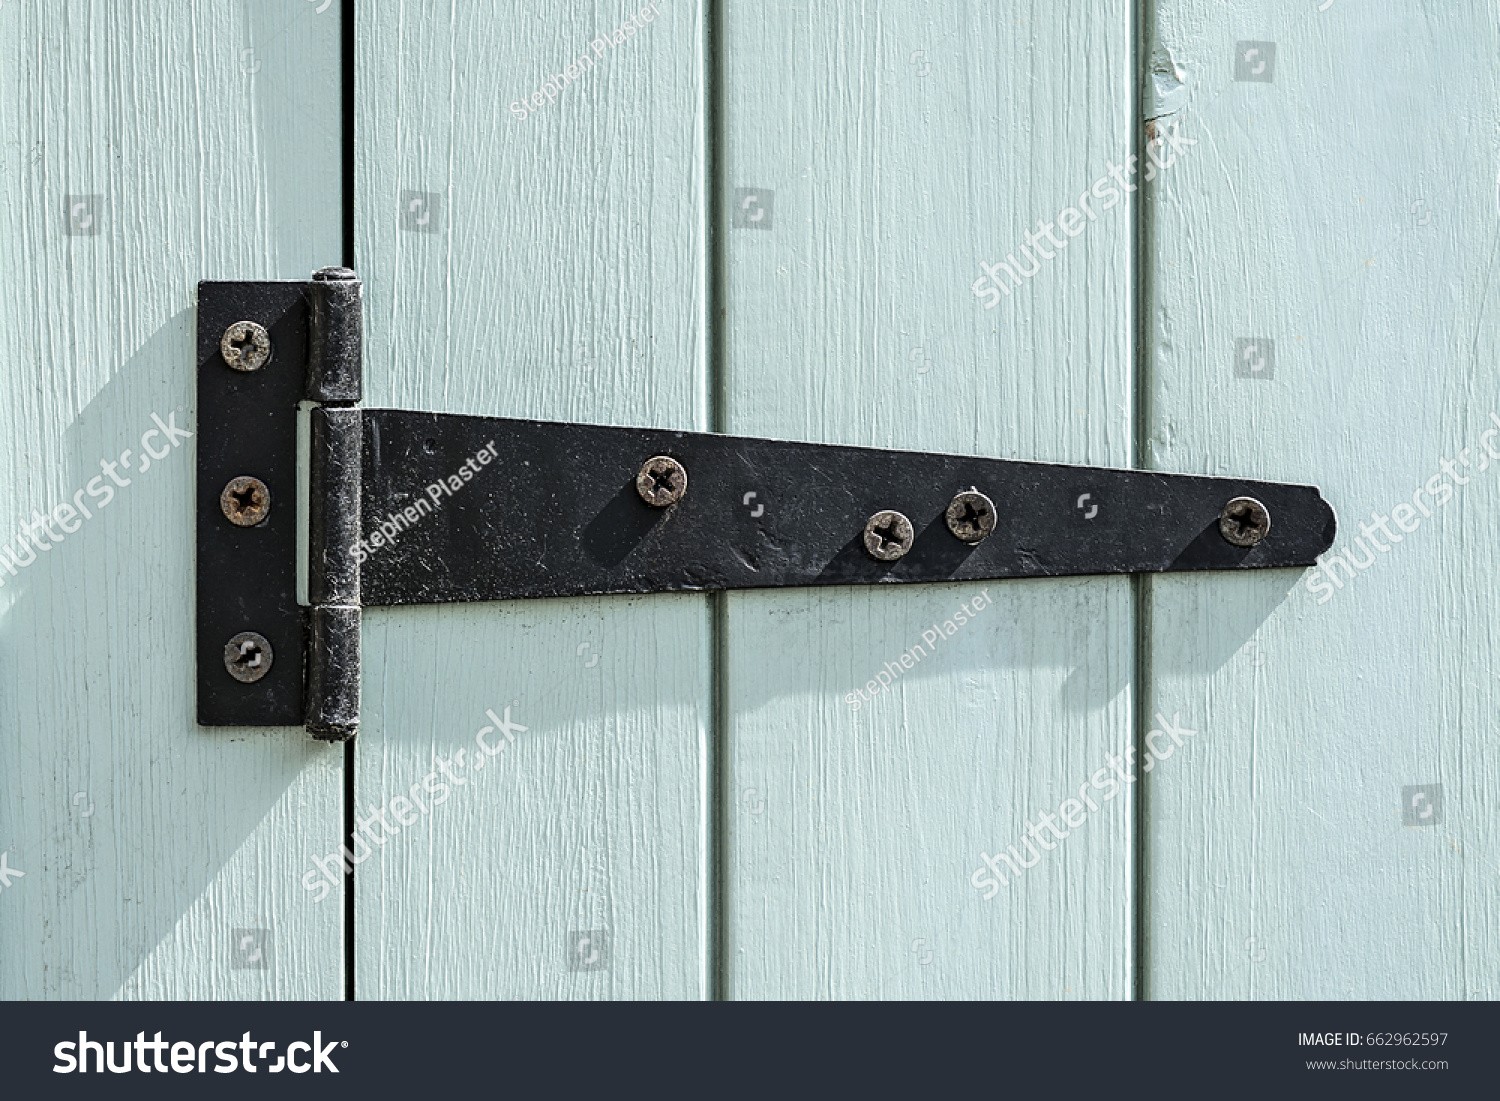 Black door hinge screwed to a bright painted wooden door. #662962597